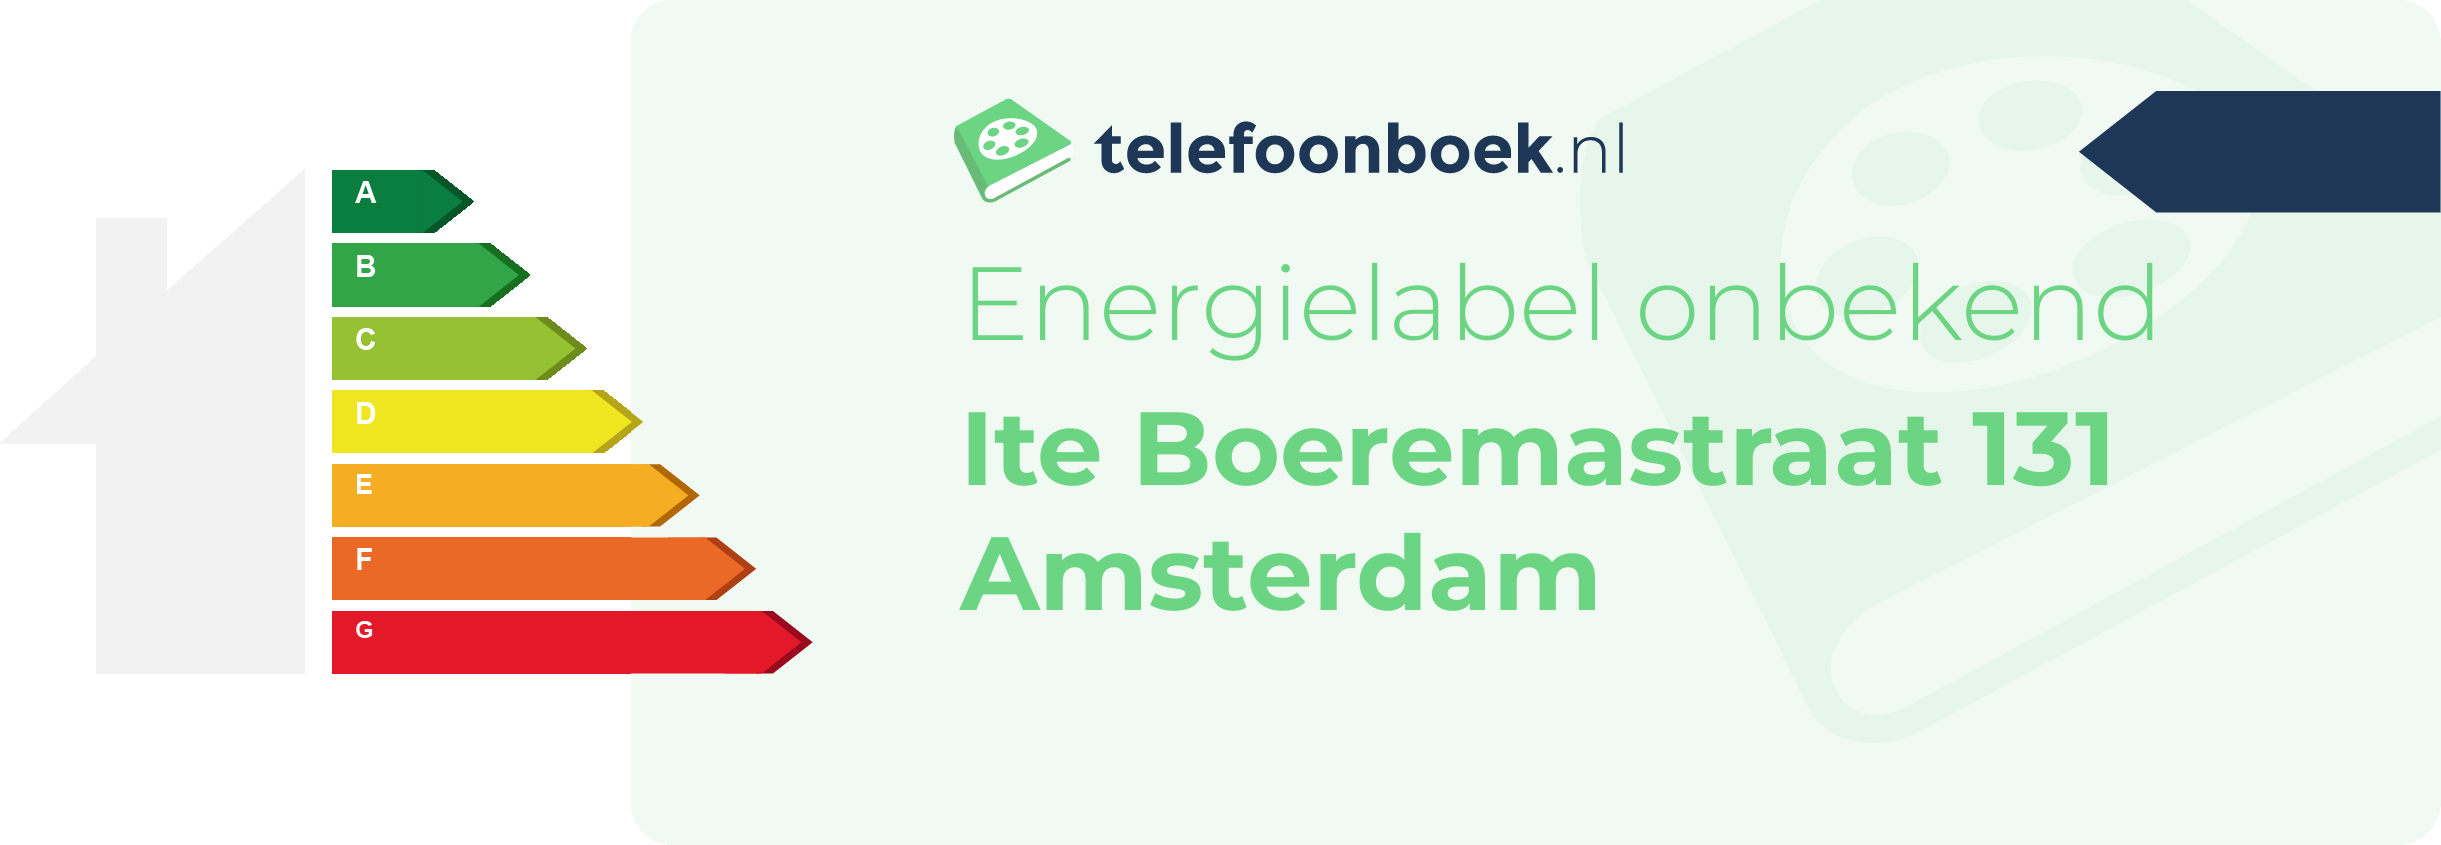 Energielabel Ite Boeremastraat 131 Amsterdam